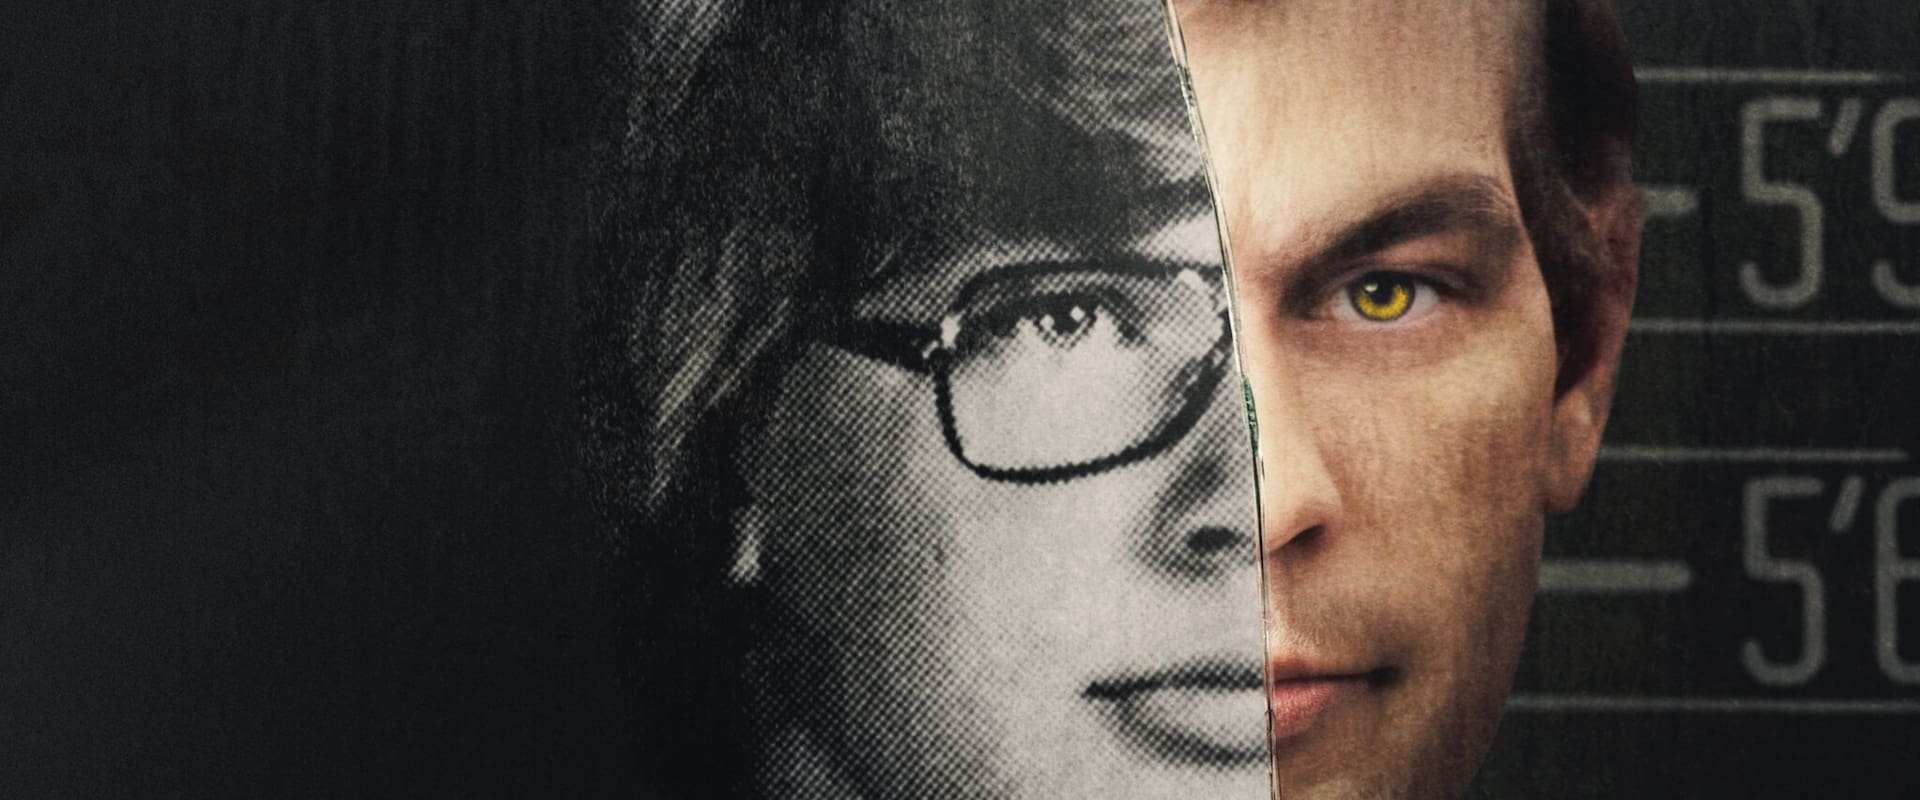 Conversaciones con asesinos: Las cintas de Jeffrey Dahmer